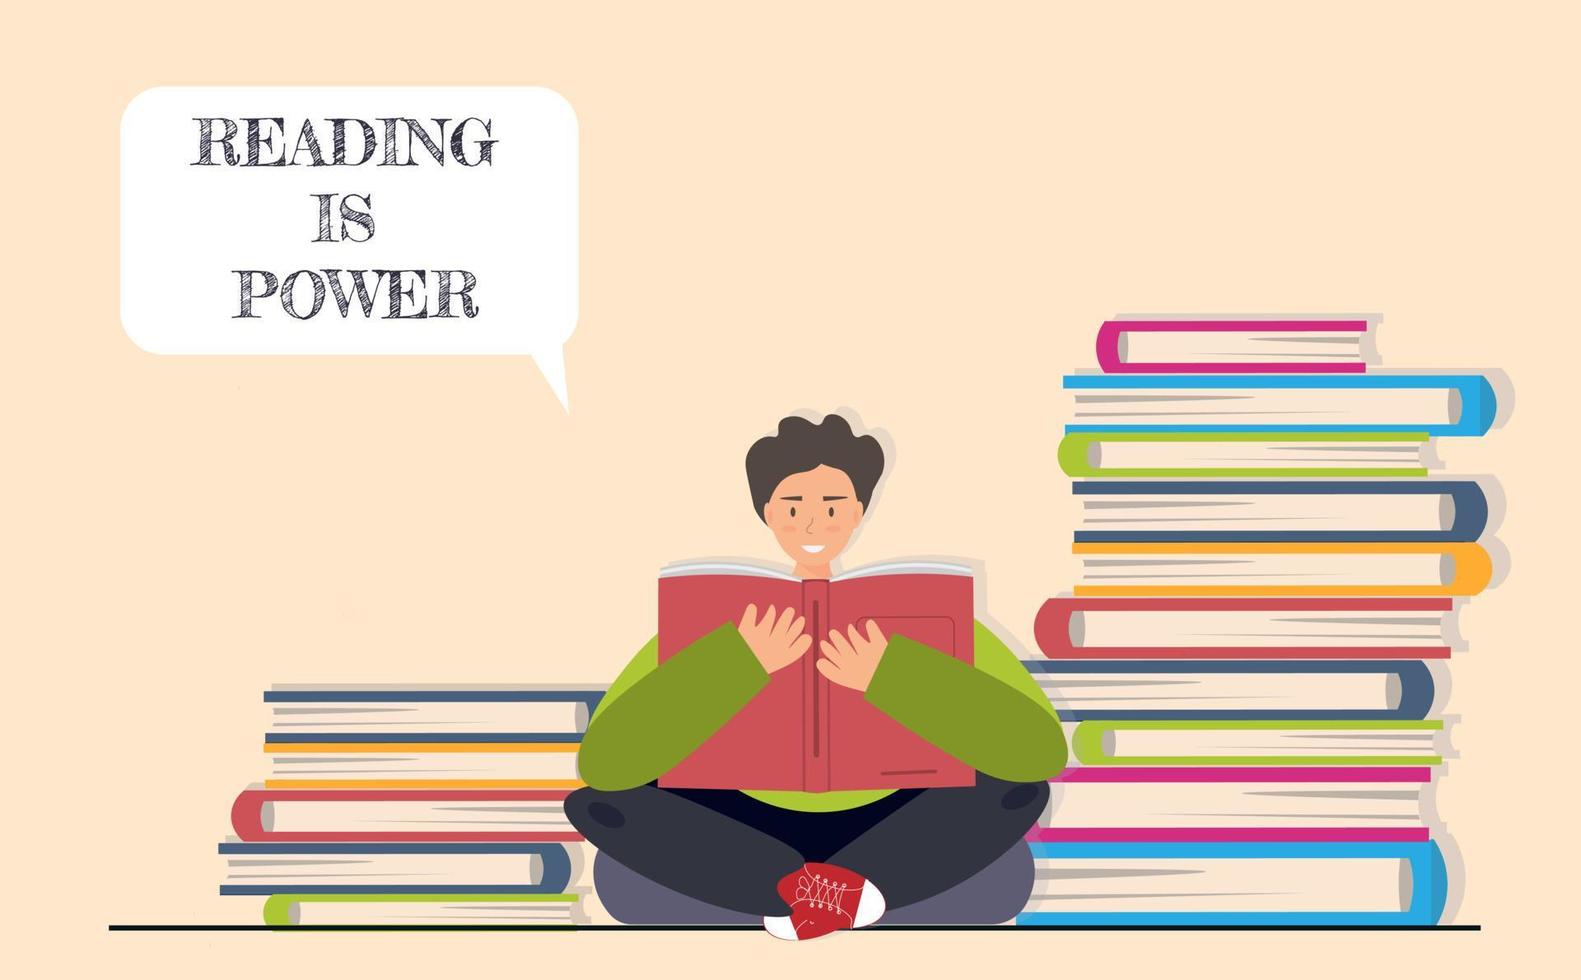 jovem feliz, estudante lendo livros na biblioteca, ler é conceito de poder, ilustração vetorial plana vetor